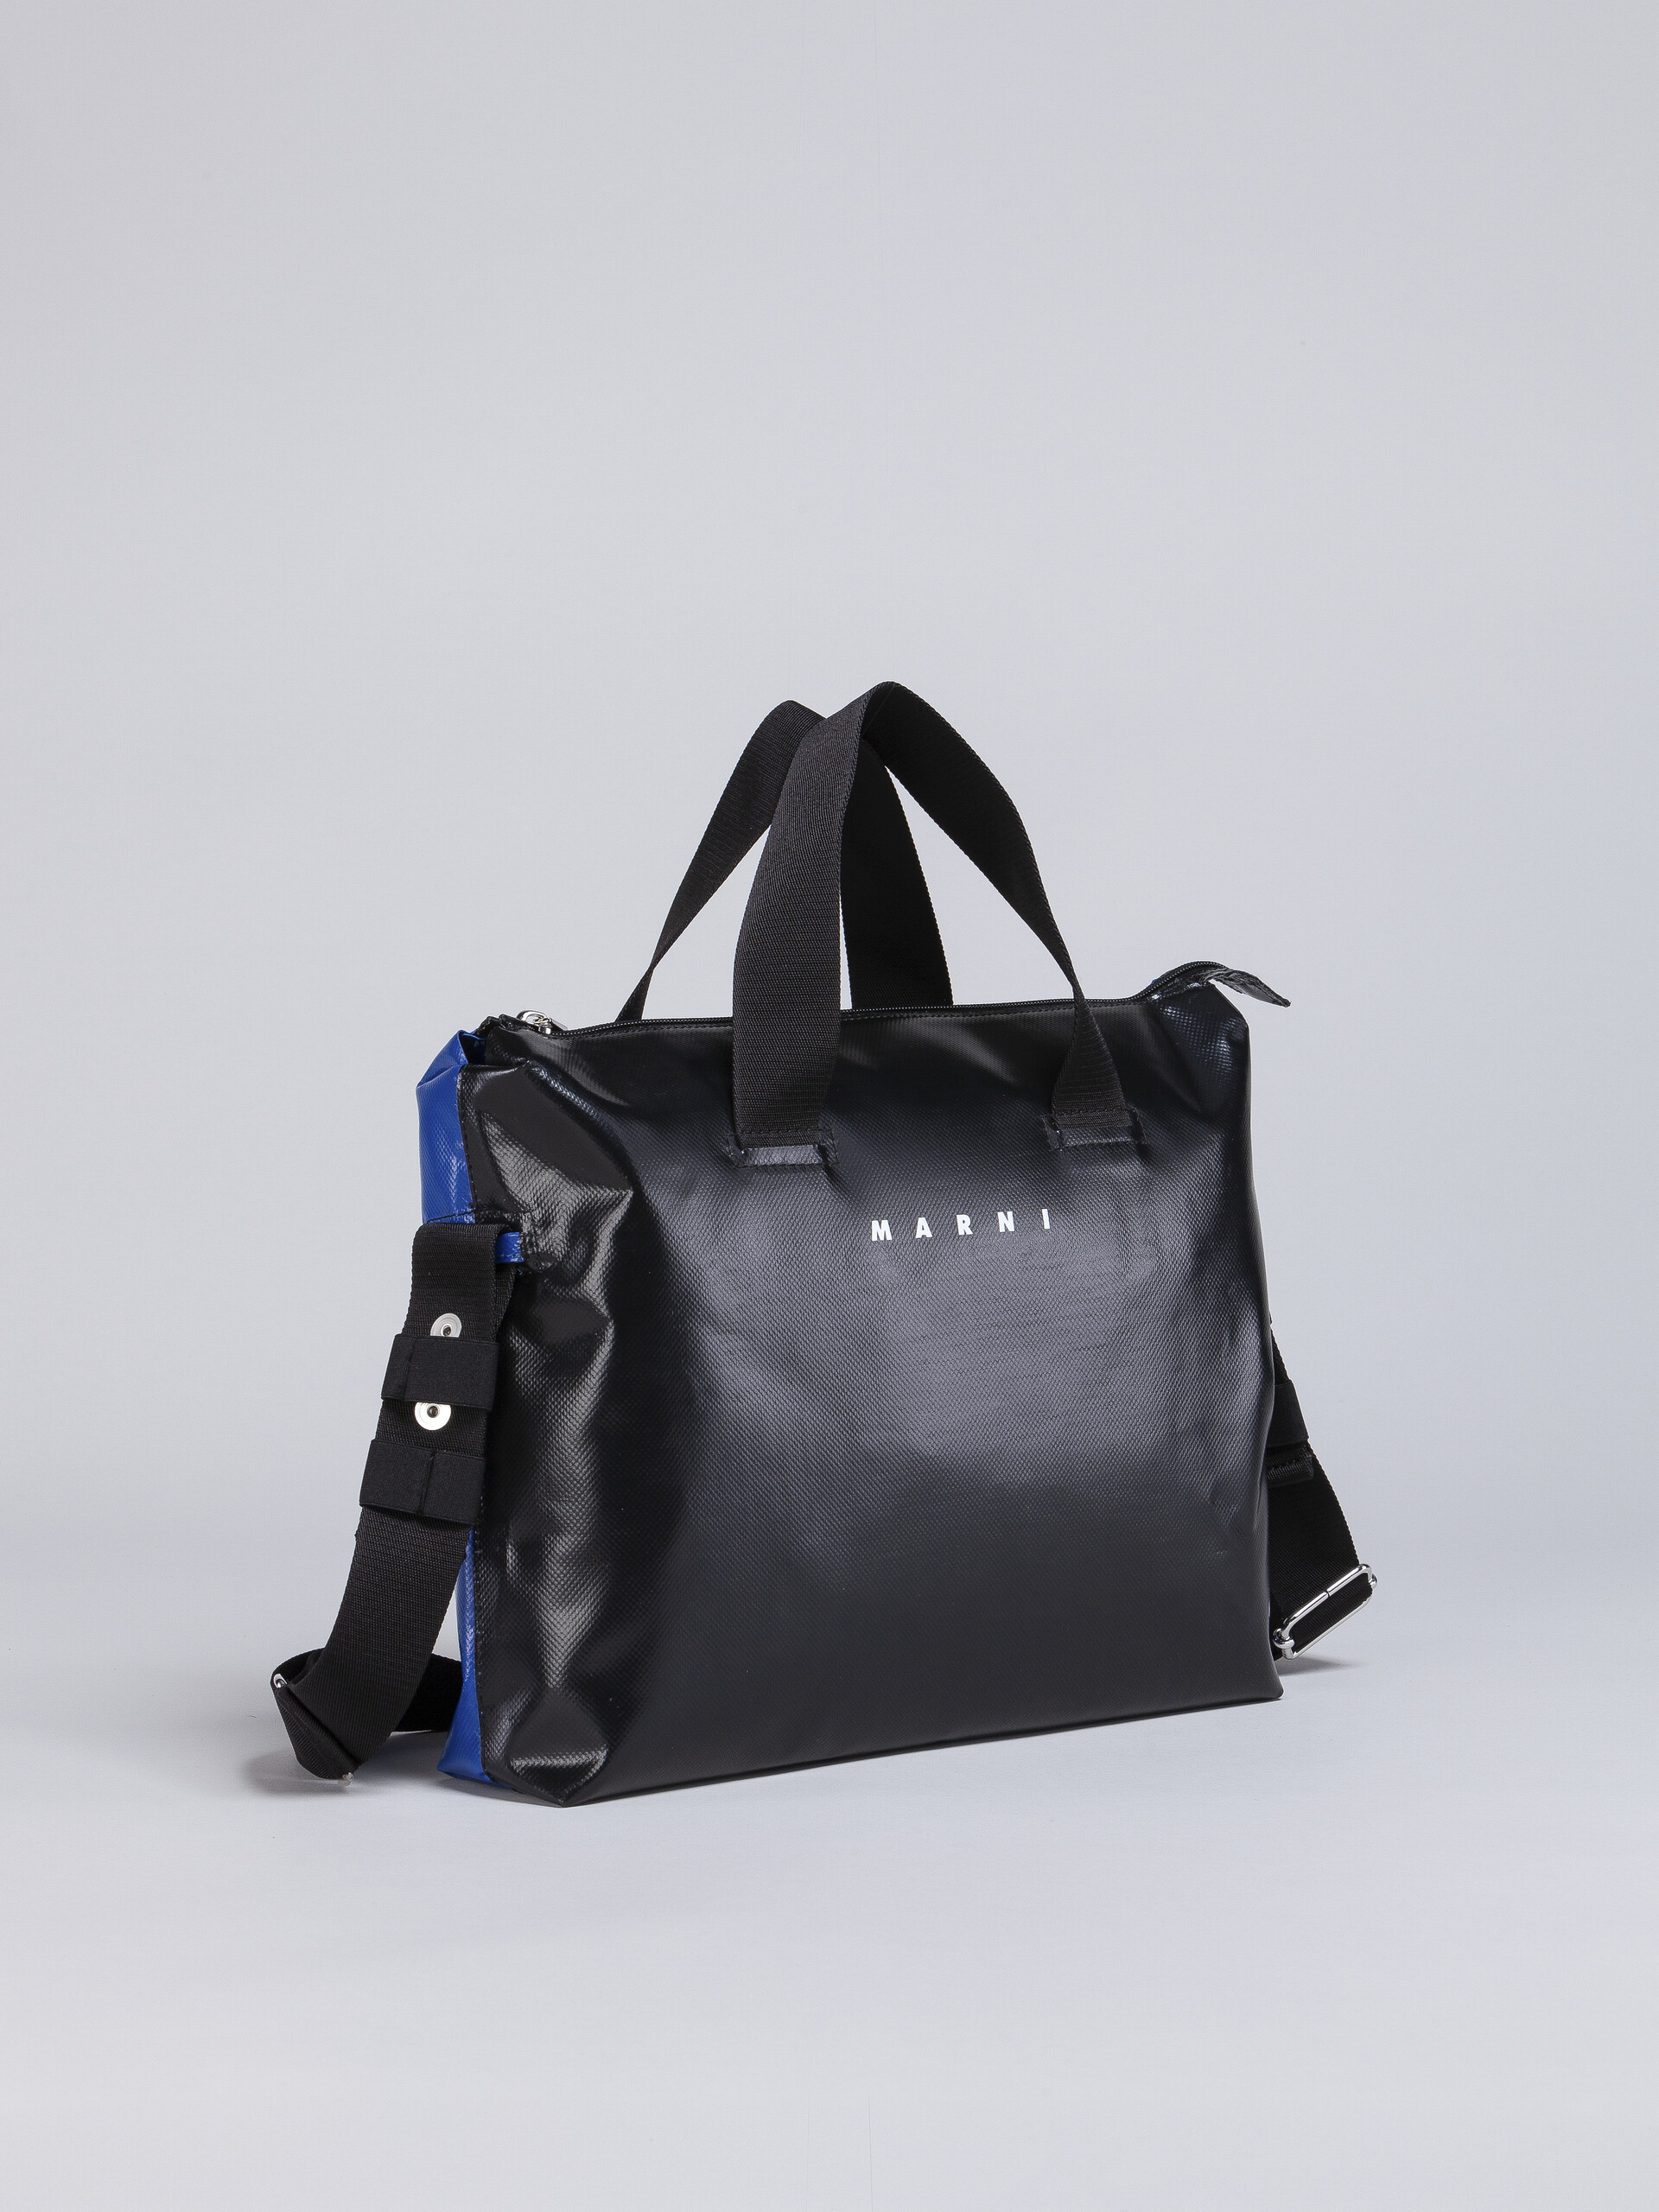 TRIBECA Tasche in Schwarz und Blau - Handtaschen - Image 6